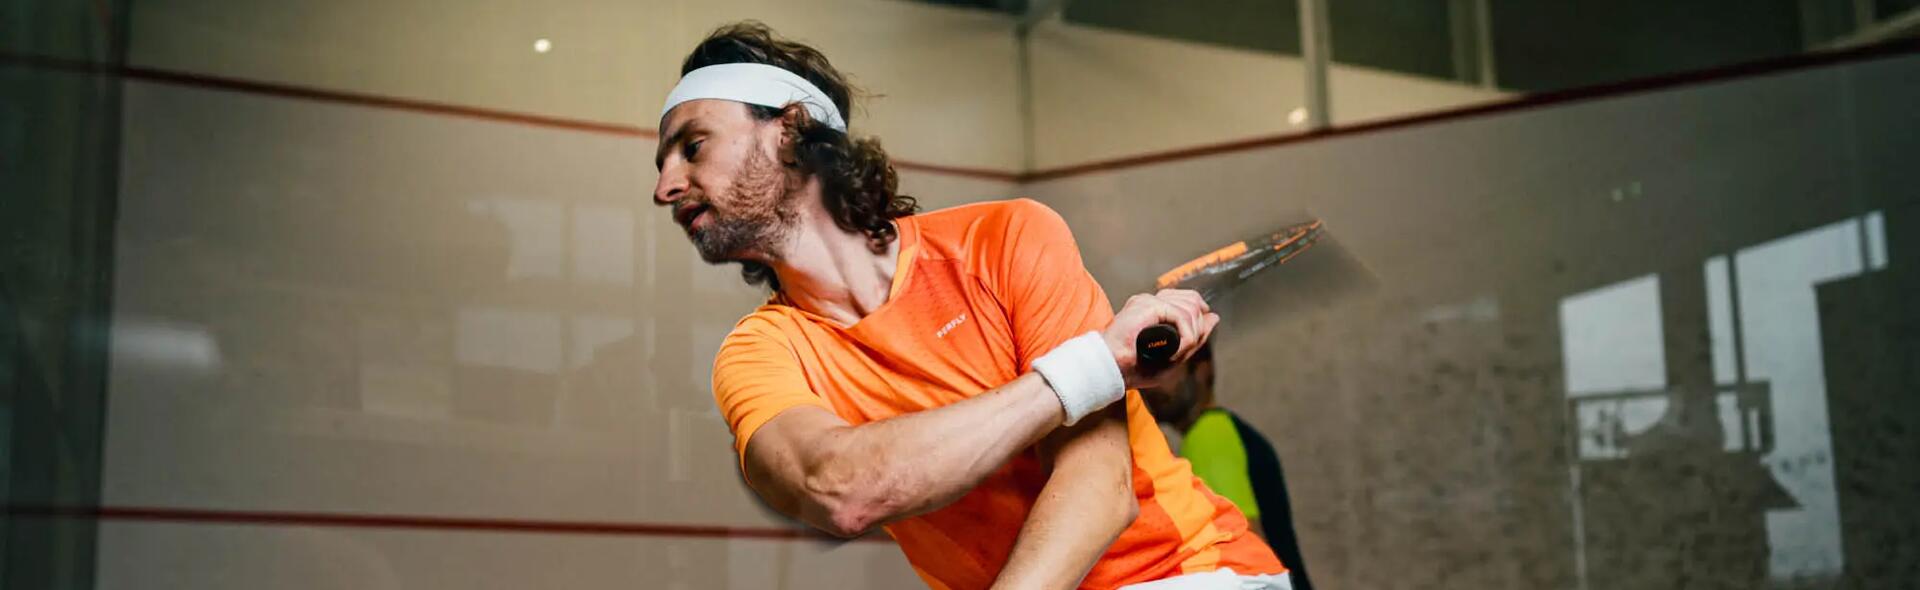 Mężczyzna w odzieży do squasha trzymający rakietę do squasha